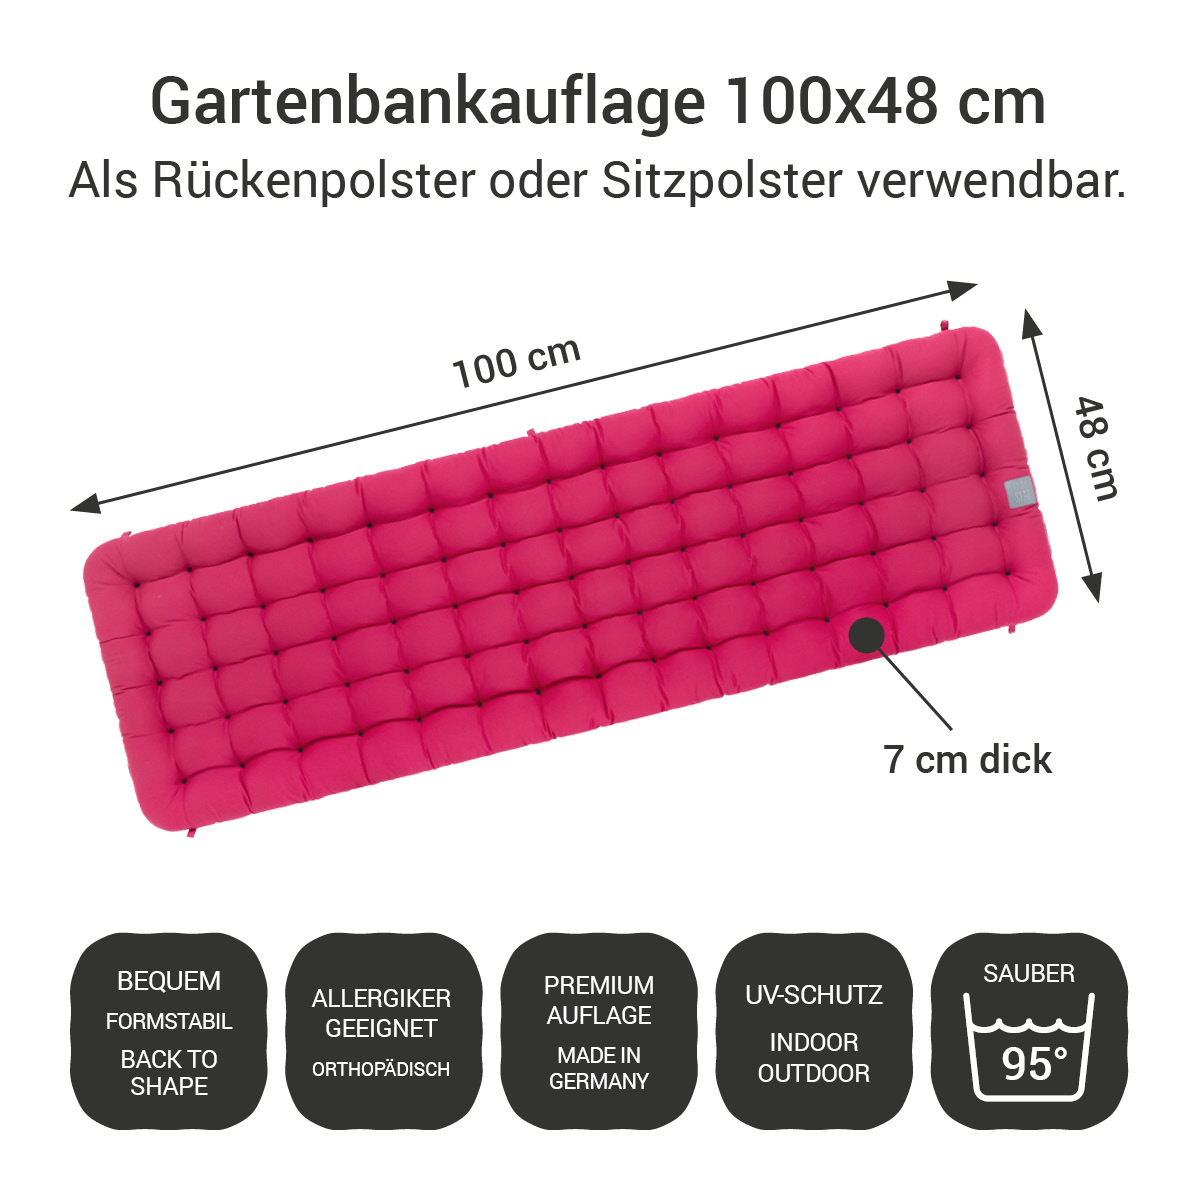 Gartenbank Auflagen (2tlg.) pink 100x48 cm / 100 x 50 cm | bequem & orthopädisch, komplett im Ganzen waschbar bis 95°C, wetterfest, Made in Germany